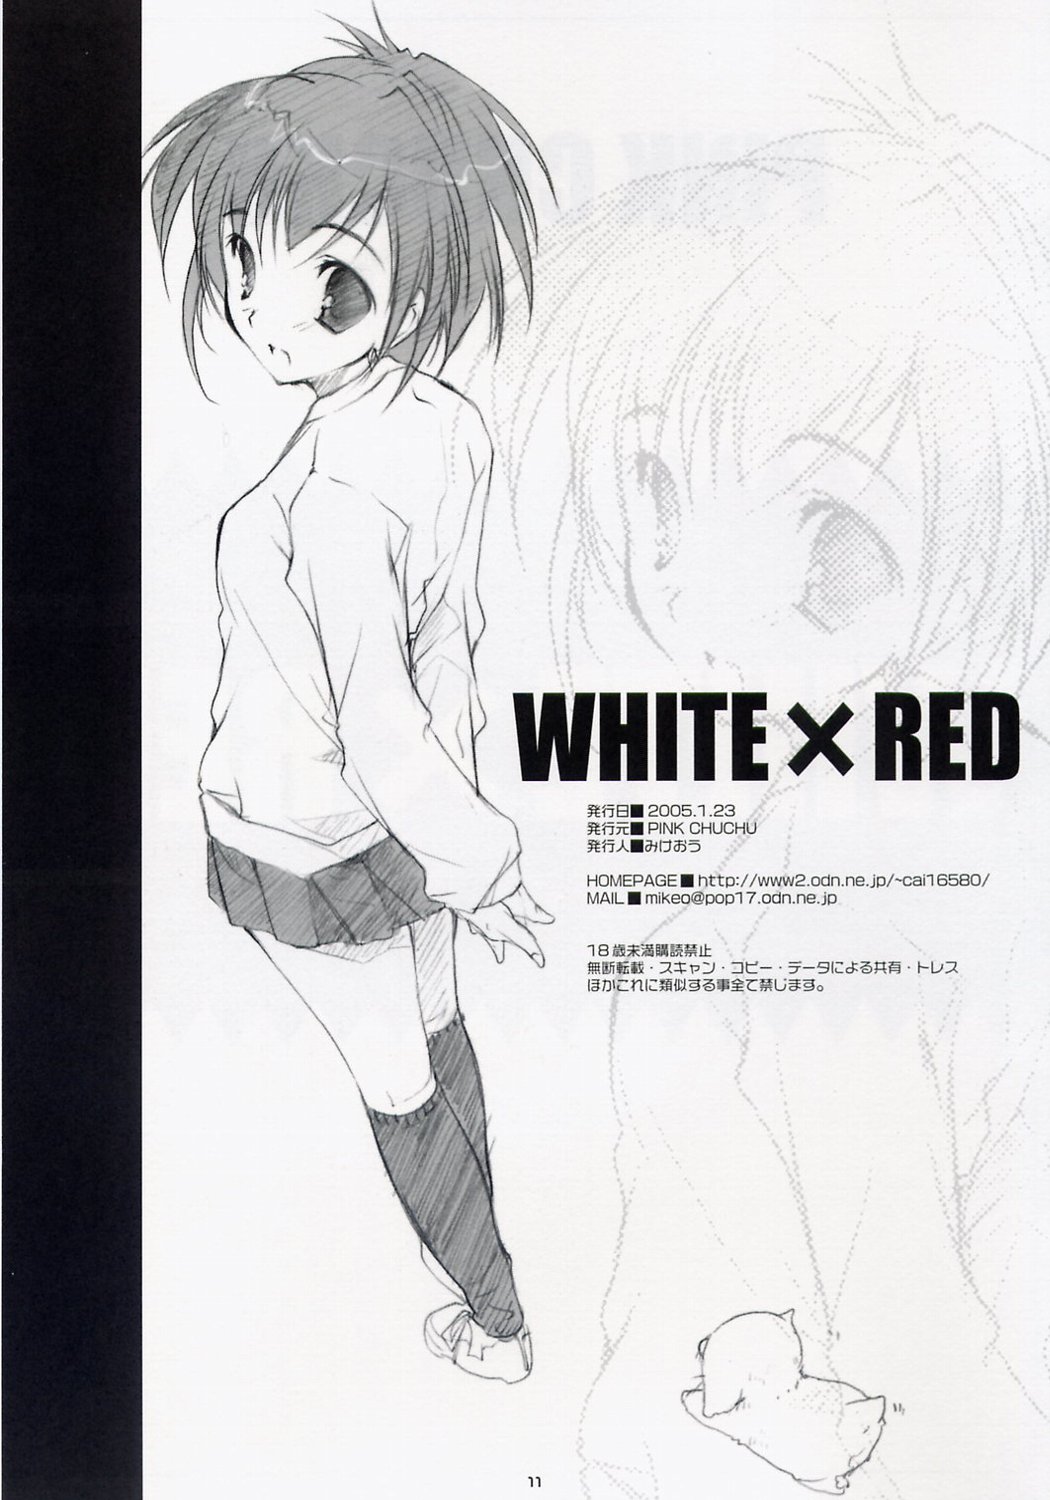 (サンクリ26) [PINK CHUCHU (みけおう)] WHITE x RED (いちご100%)